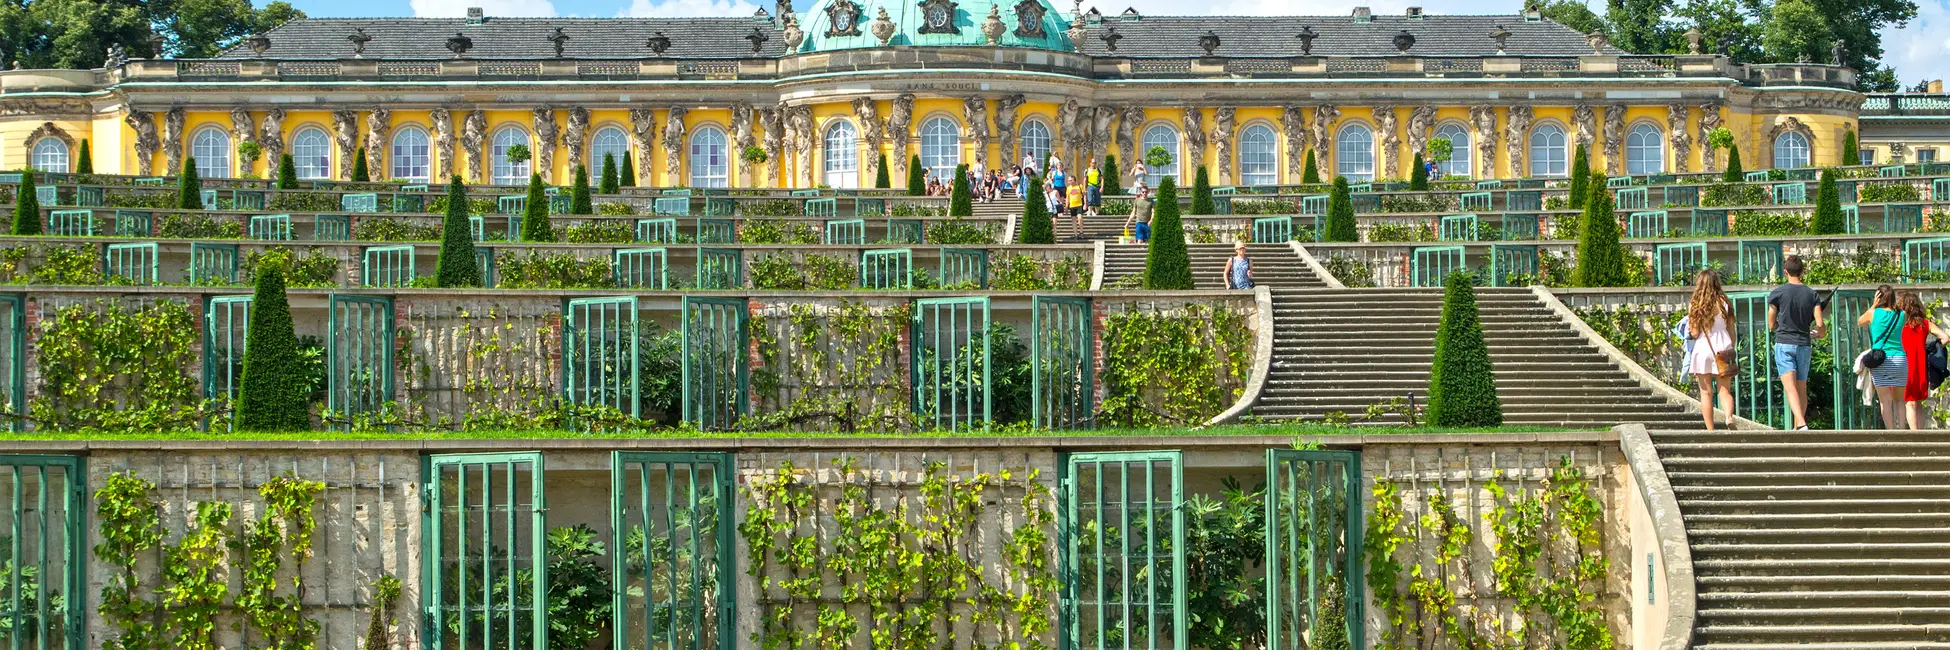 Le palace Sans Souci à Potsdam 